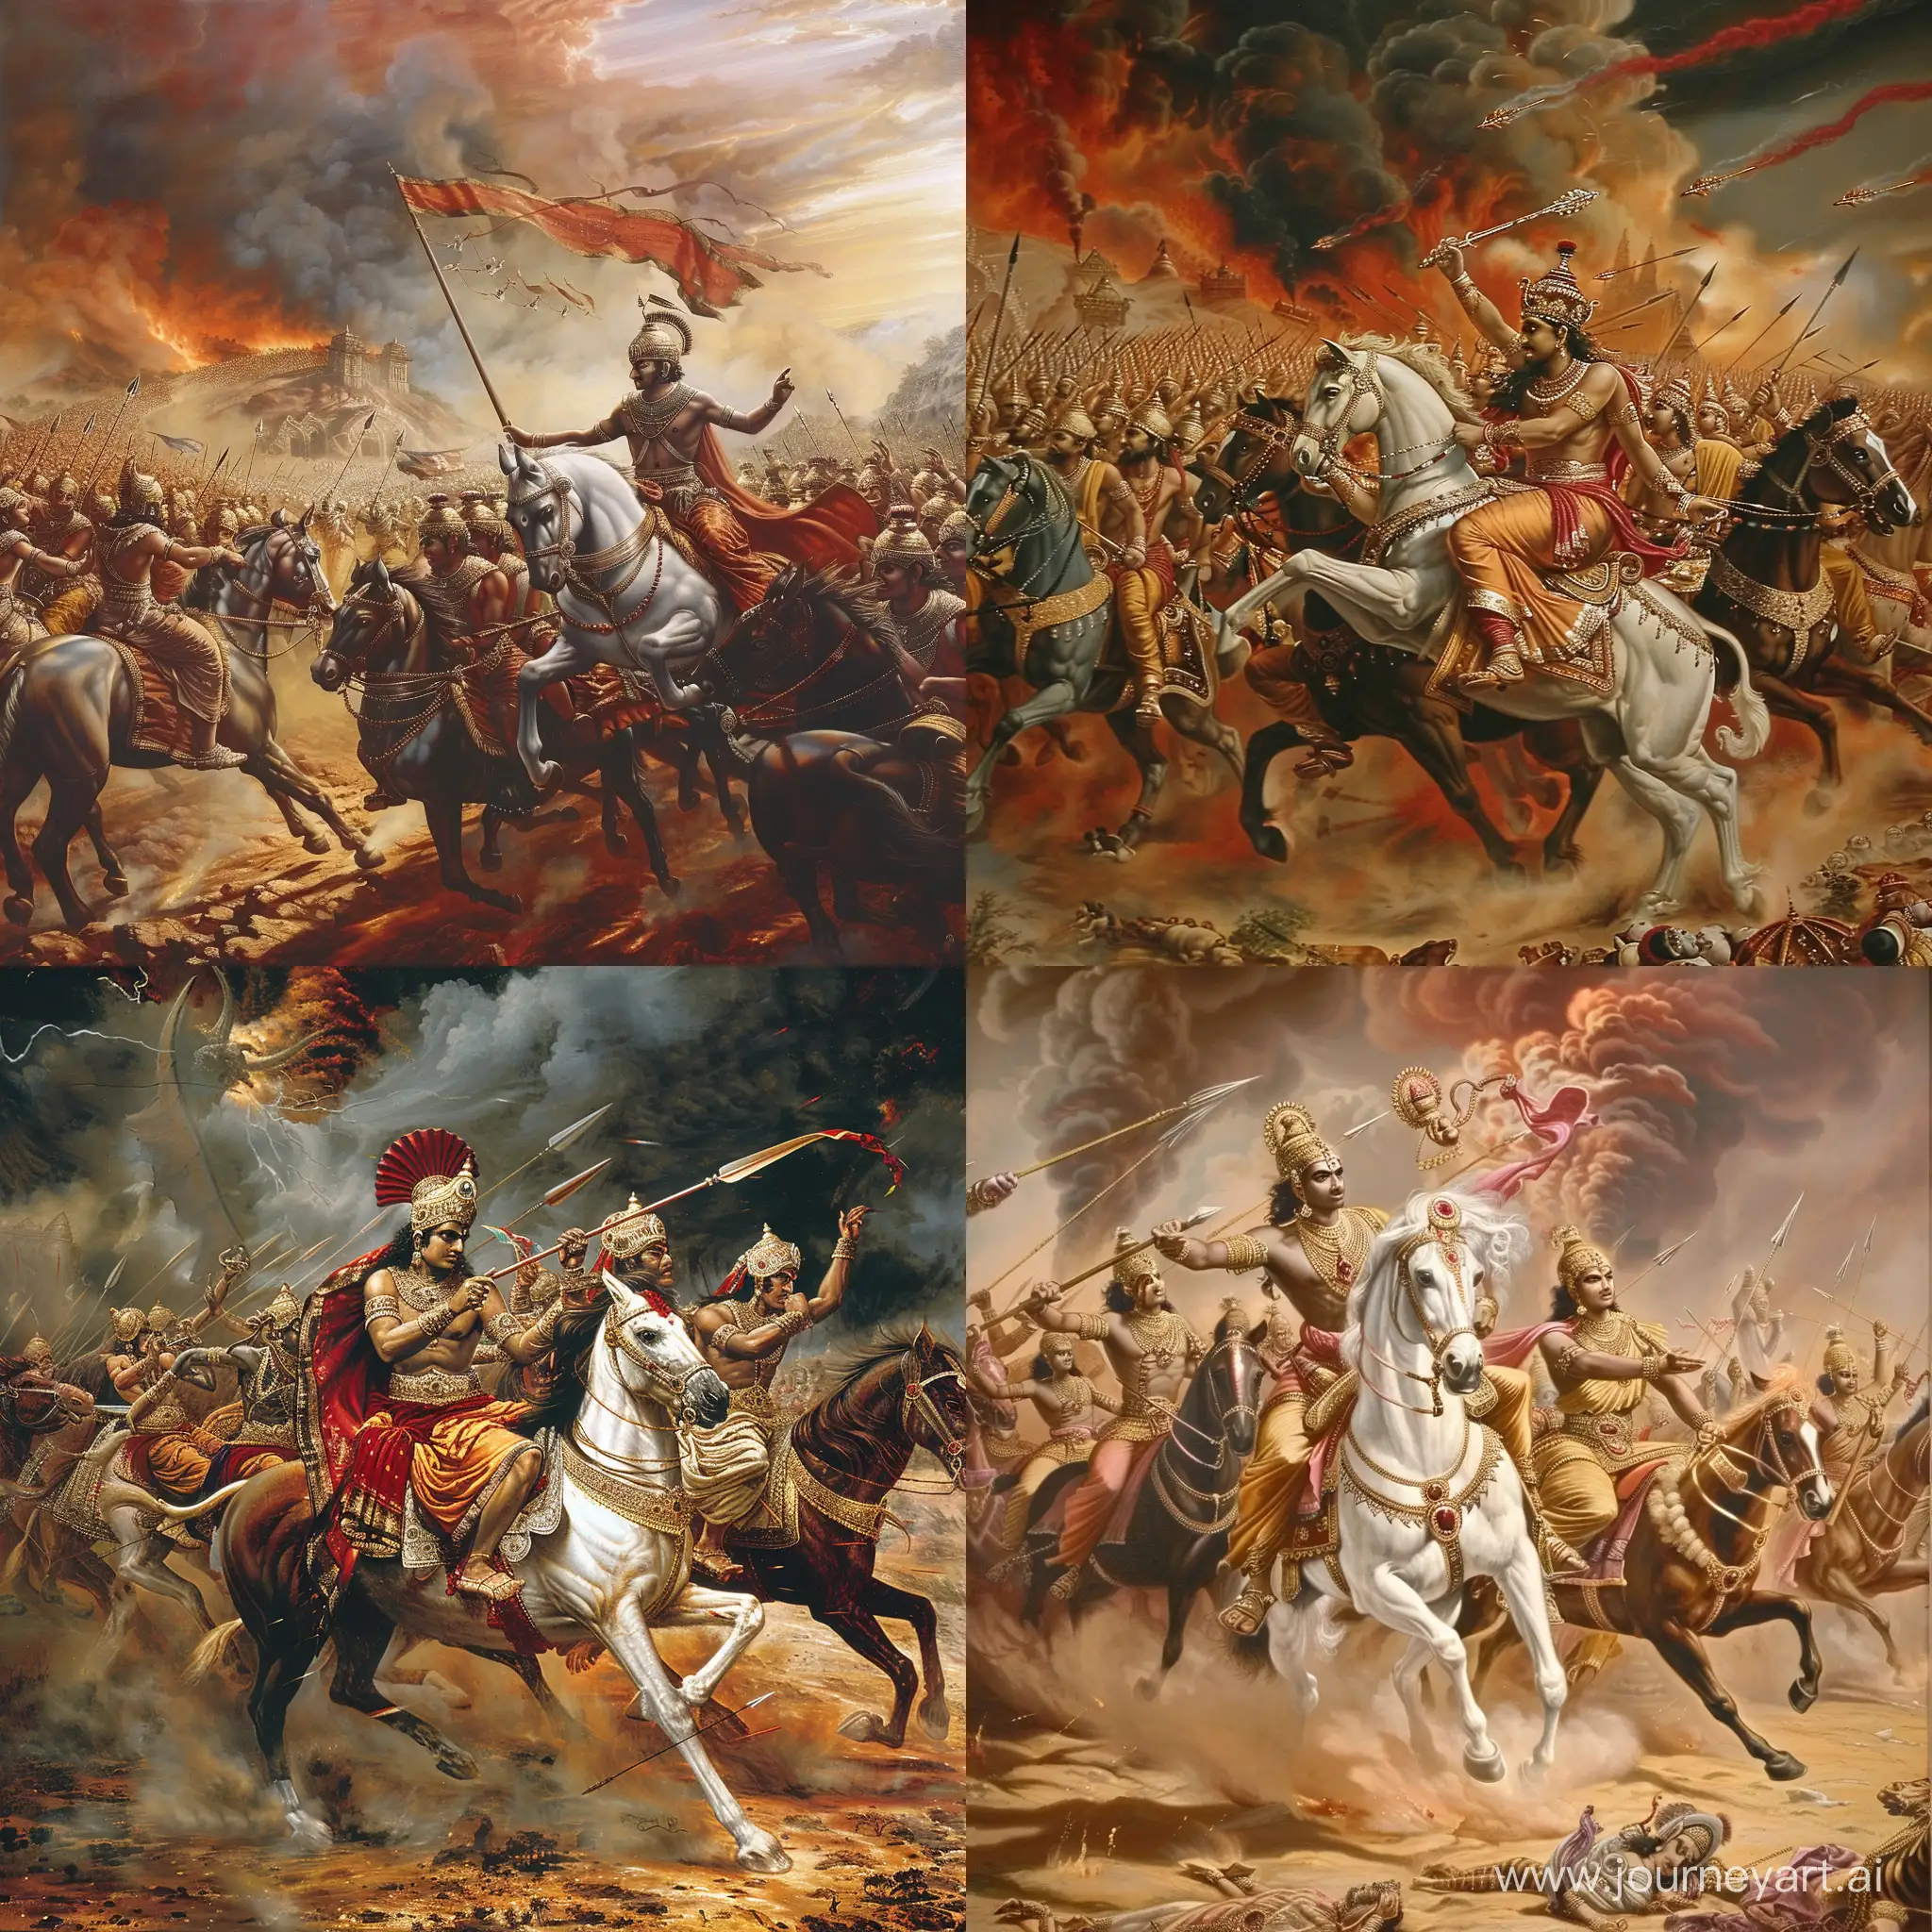 Epic-Battle-Scene-from-the-Mahabharata-Hindu-Mythology